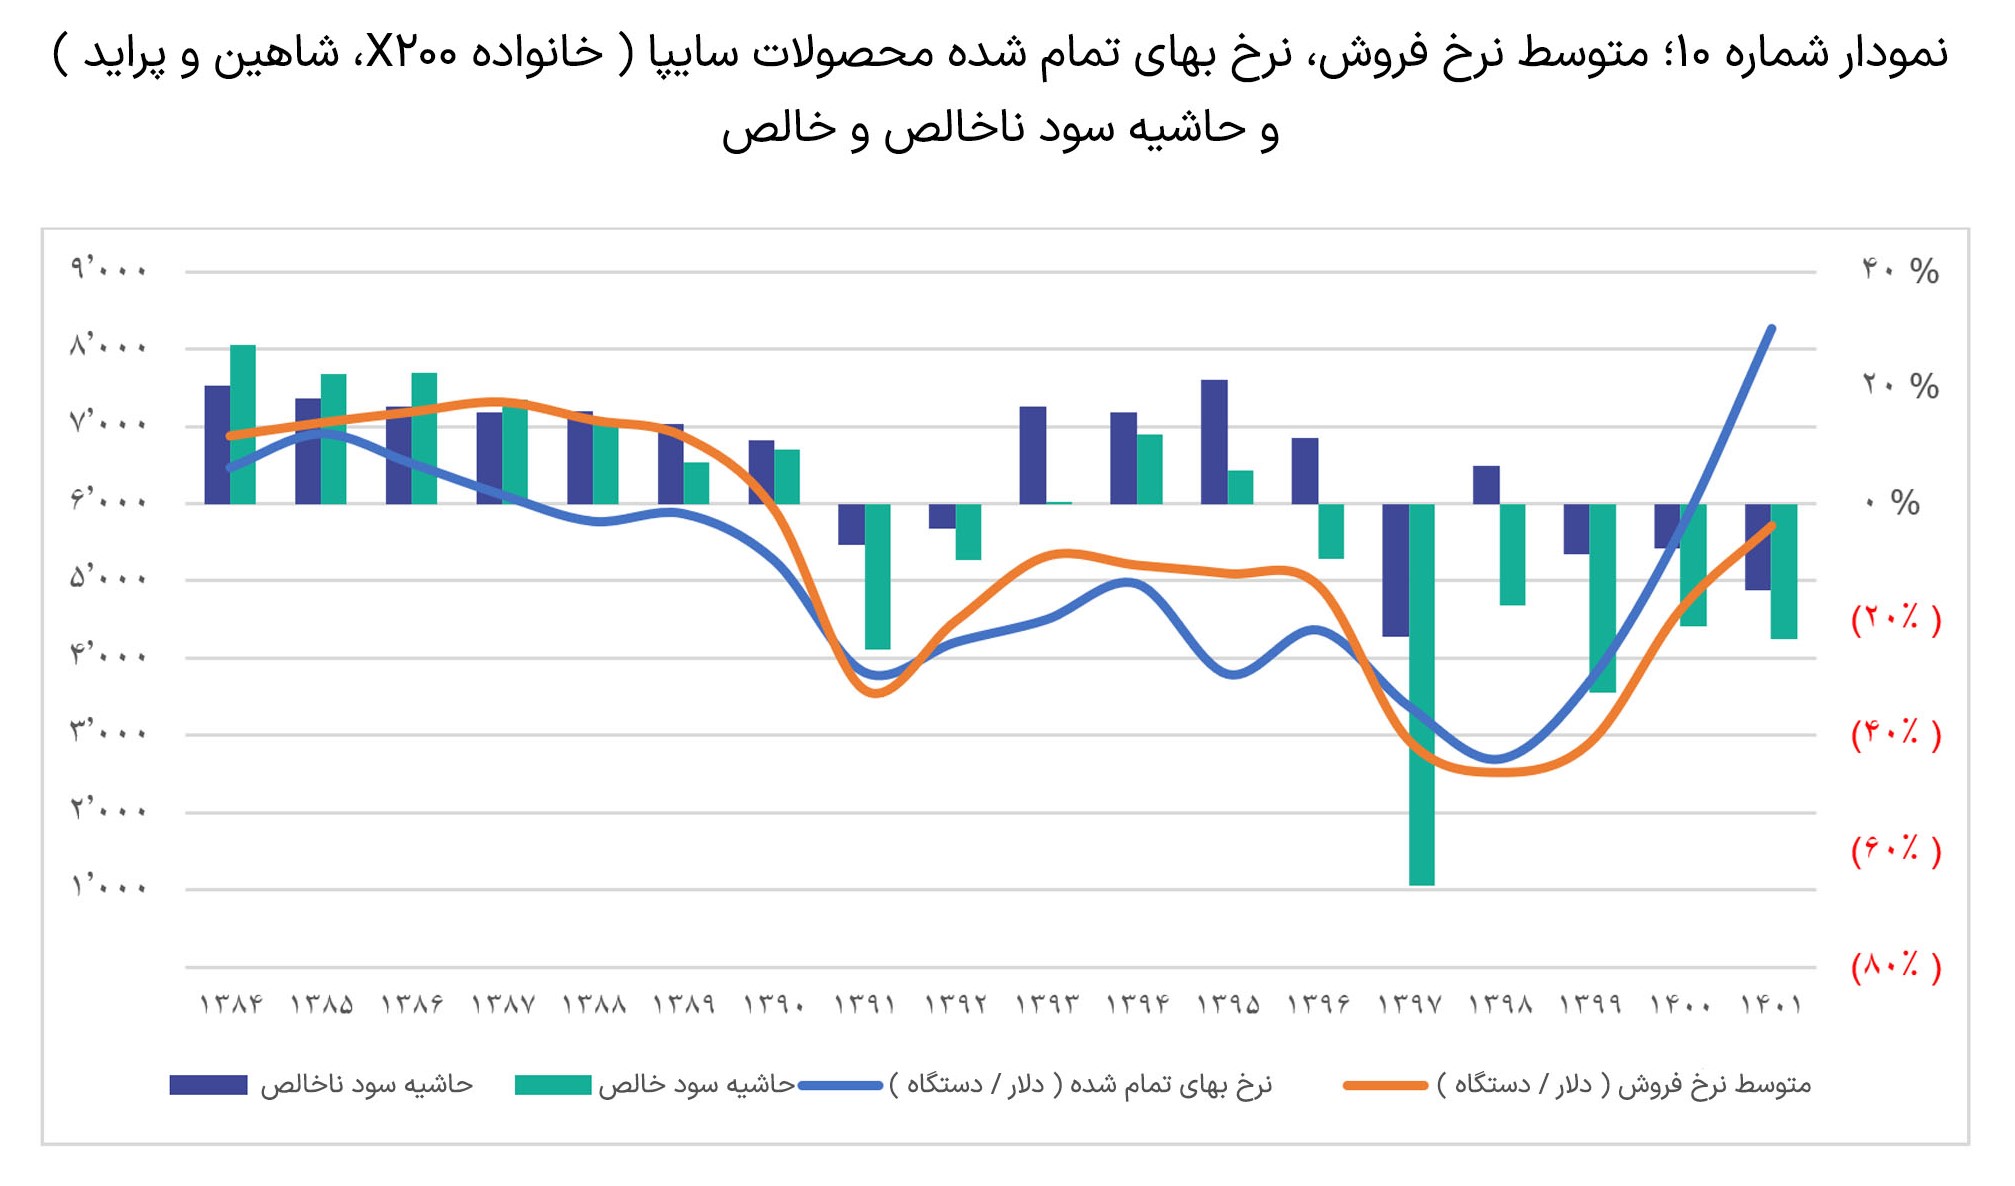 بررسی-عملکرد-دو-شرکت-ایران-خودرو-و-سایپا5-3-slide-04-(2).jpg